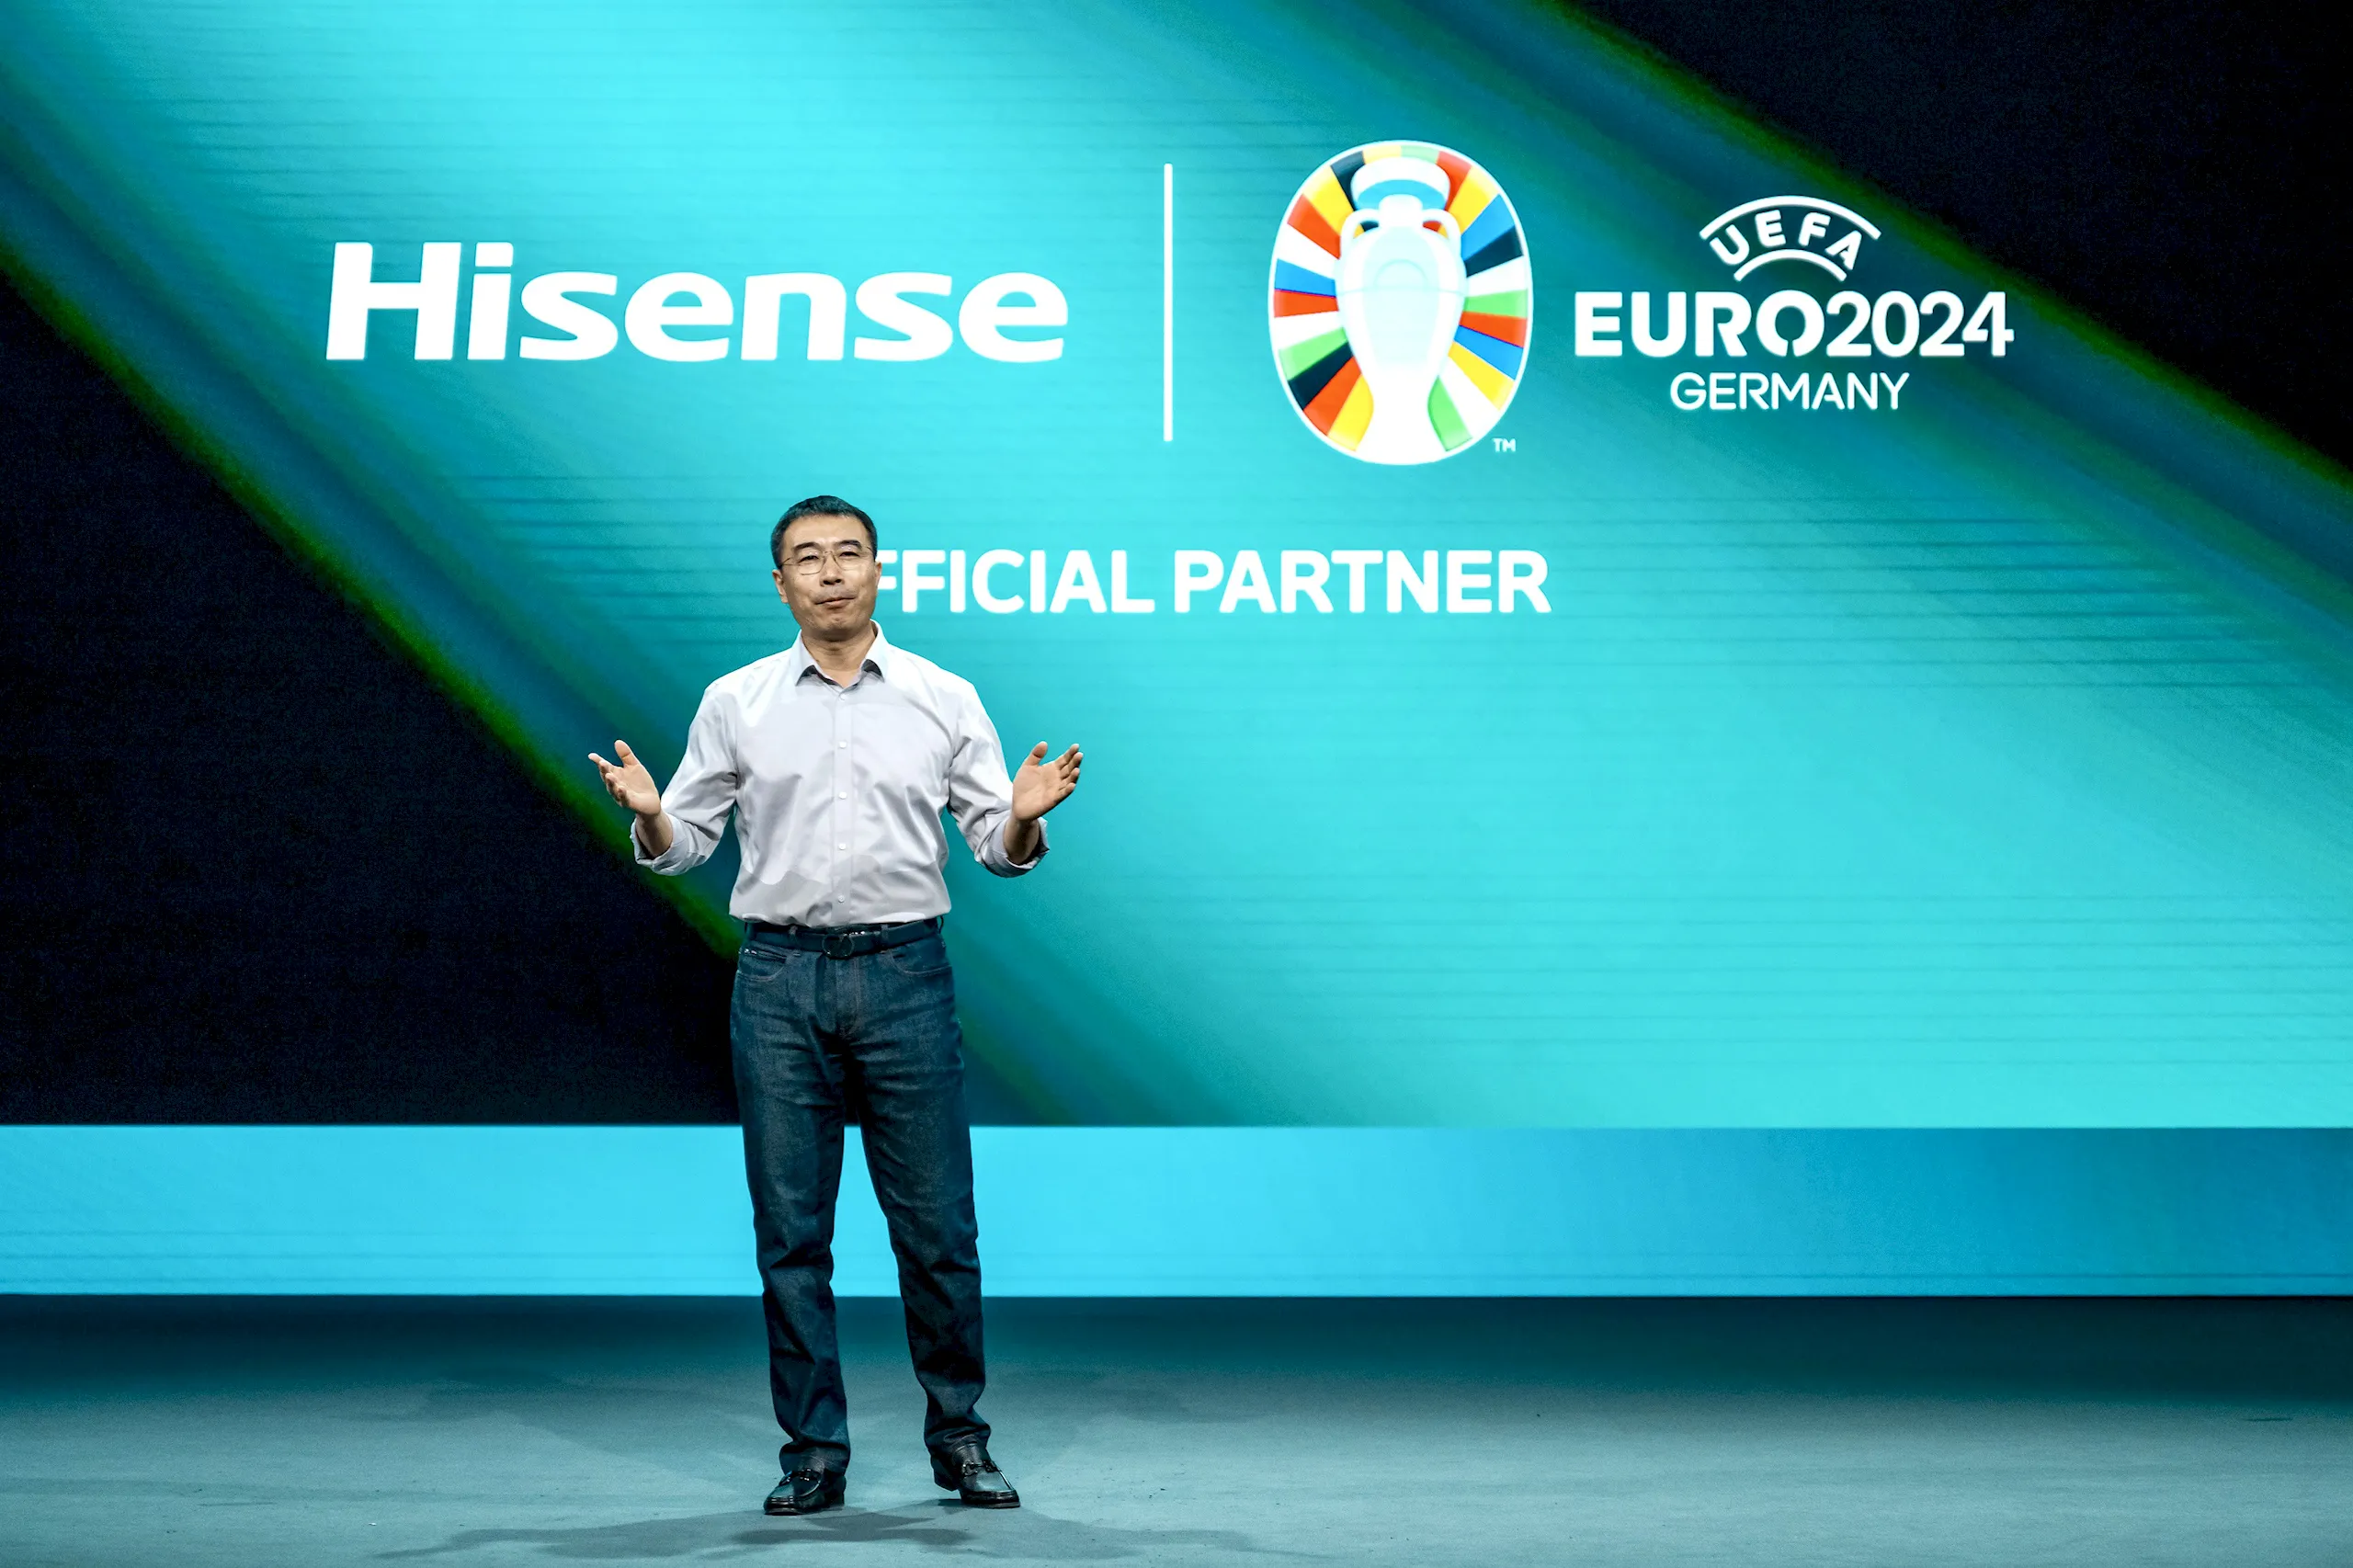 Tập đoàn Hisense chính thức trở thành đối tác chiến lược của Liên đoàn Bóng đá Châu Âu, tiếp tục tài trợ cho Giải bóng đá vô địch châu Âu 2024